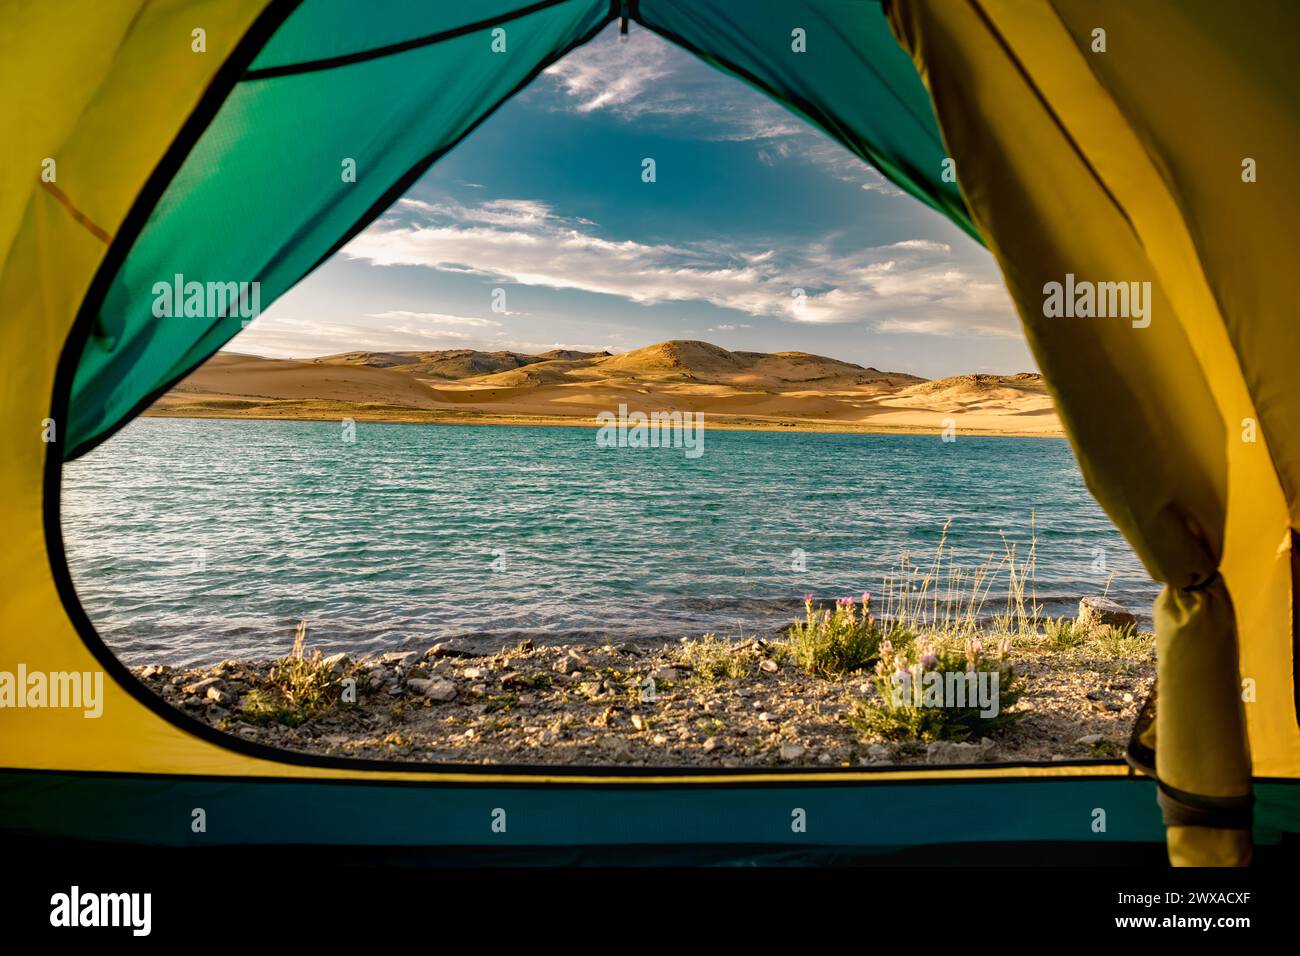 Belle vue depuis la tente au lac tranquille avec de l'eau turquoise et des dunes de sable contre le ciel bleu Banque D'Images